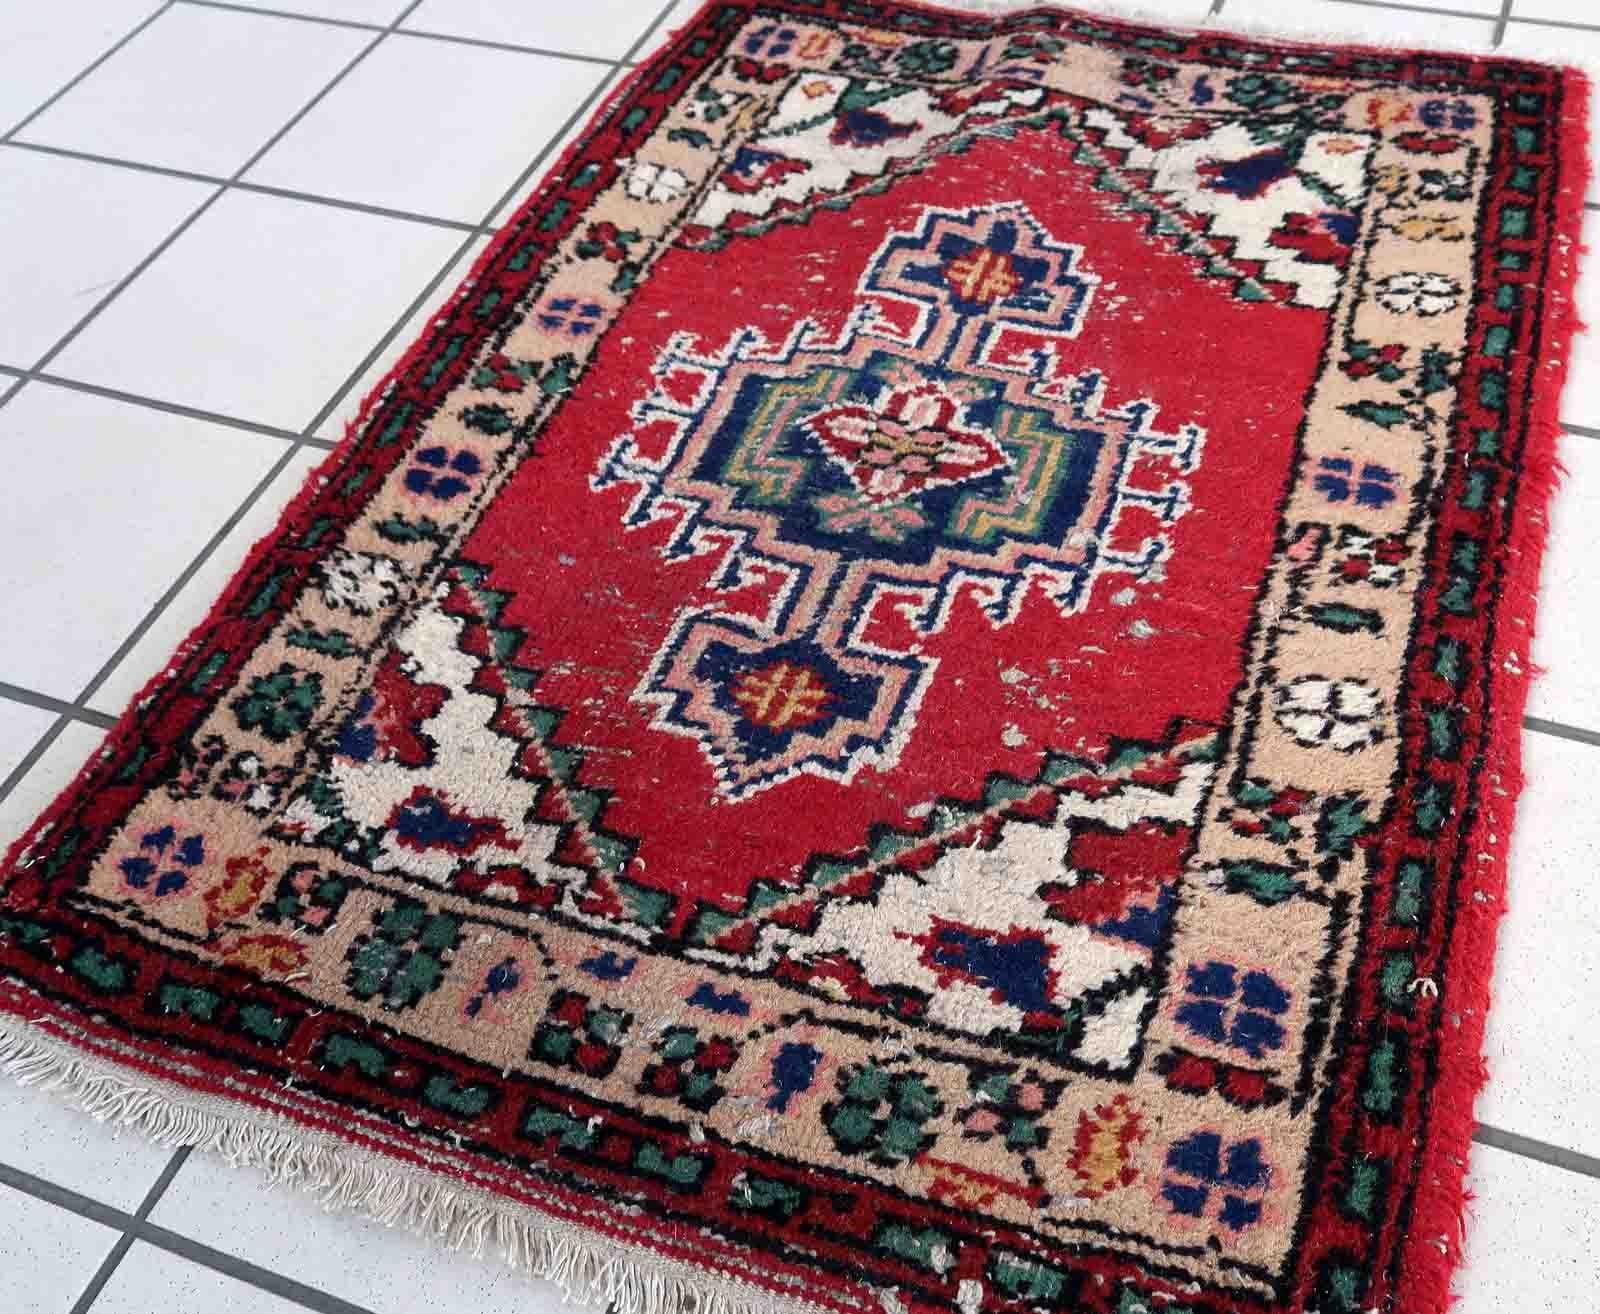 Handgefertigter alter persischer Hamadan-Teppich in beschädigtem Zustand. Der Teppich wurde Ende des 20. Jahrhunderts aus Wolle hergestellt.

-zustand: notleidend,

-etwa: 1970er Jahre,

-größe: 2,1' x 2,9' (65cm x 89cm),

-material: